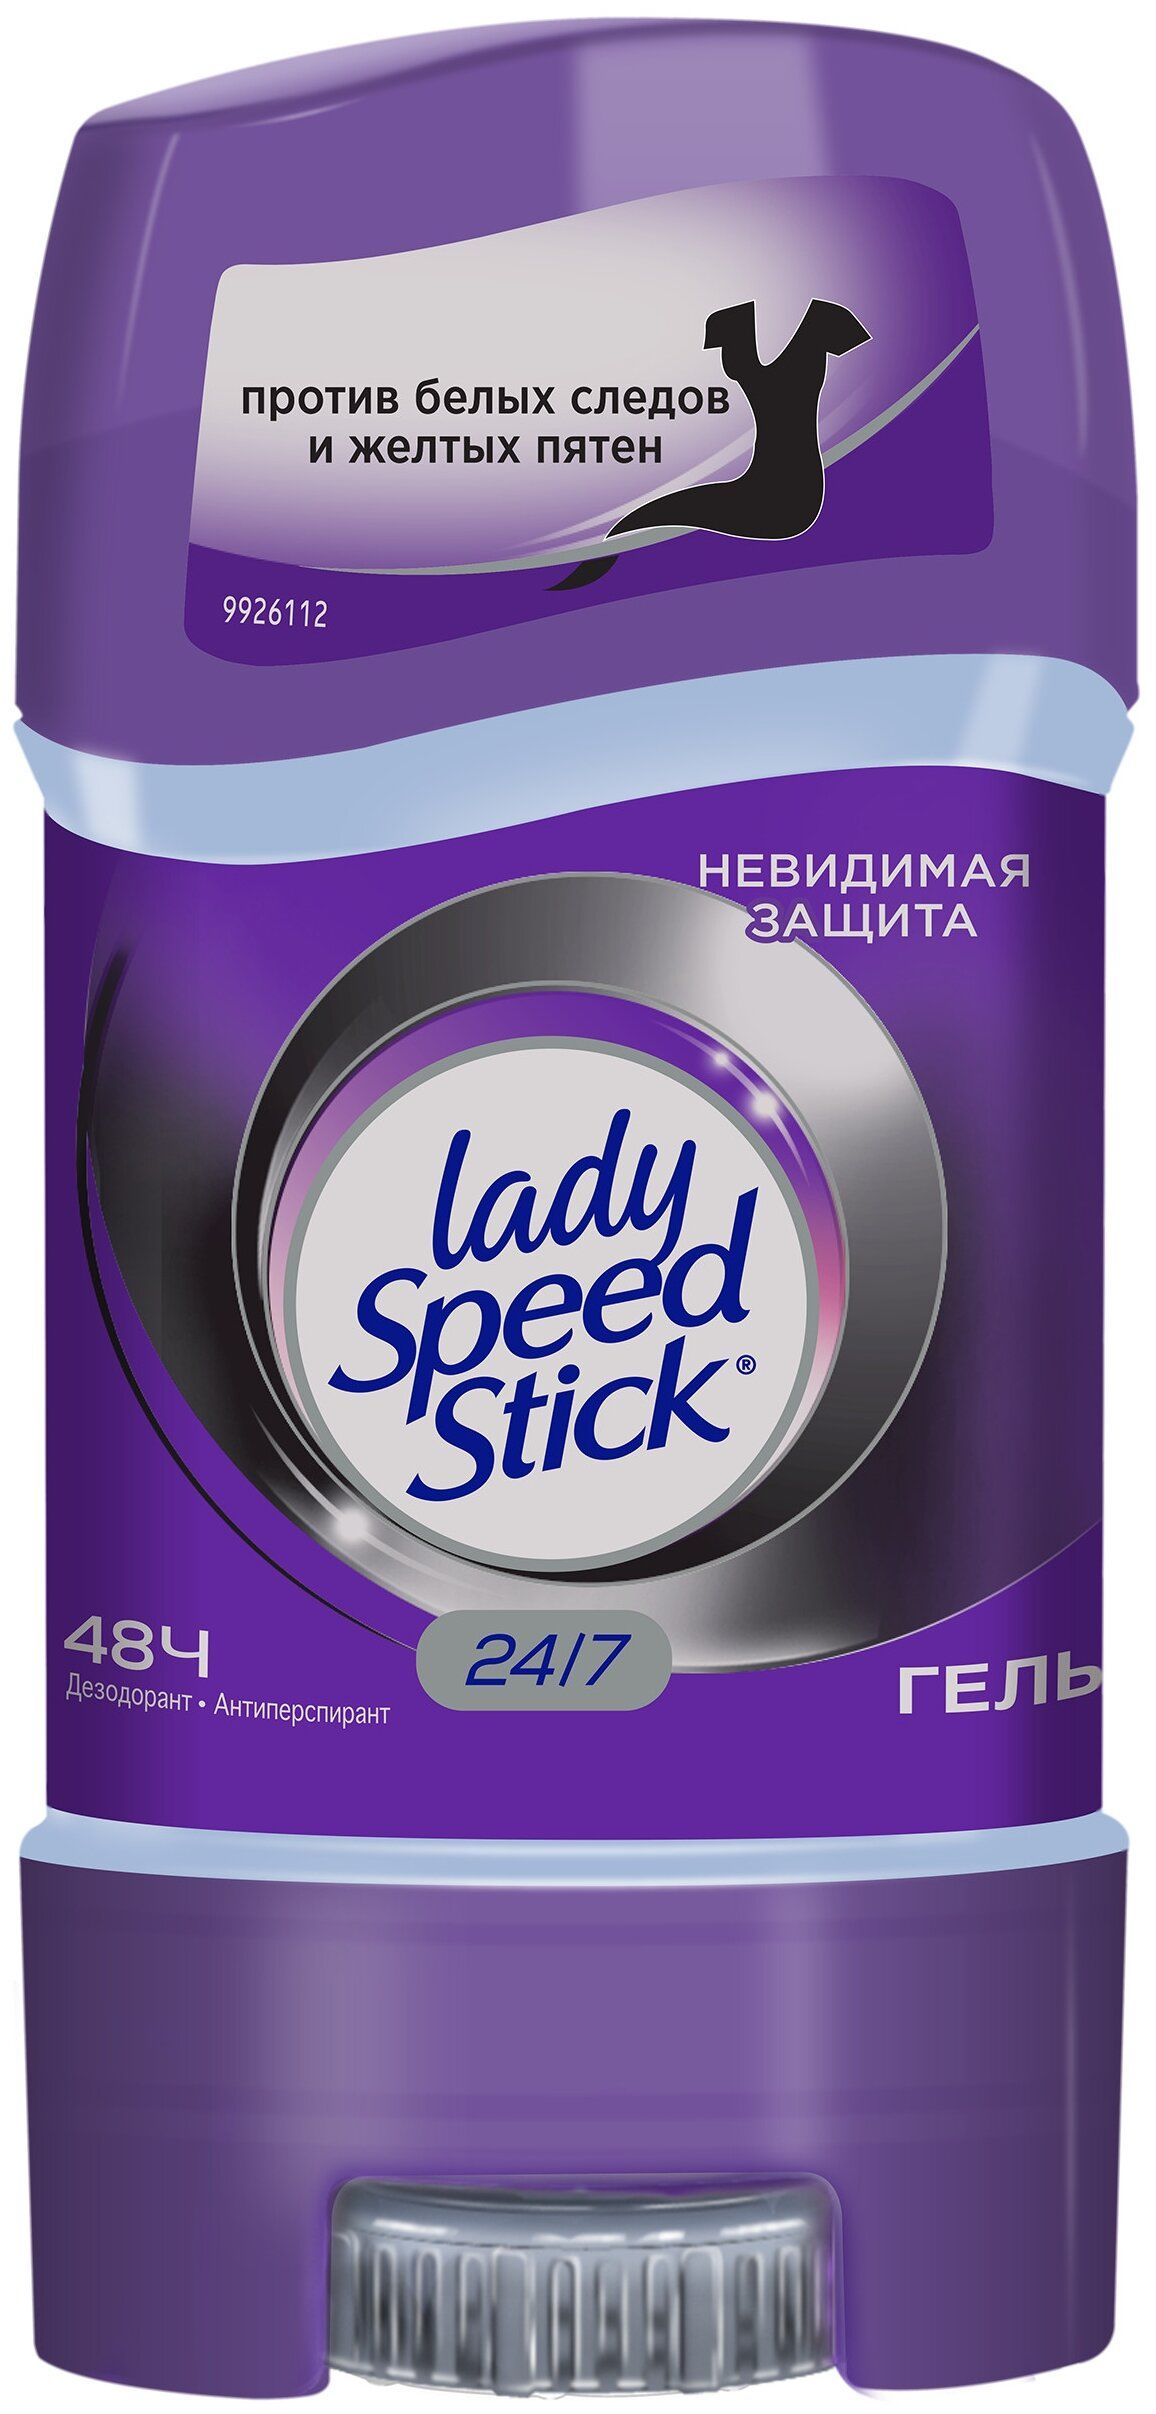 Дезодорант-гель "Невидимая защита" Lady Speed Stick Deodorant